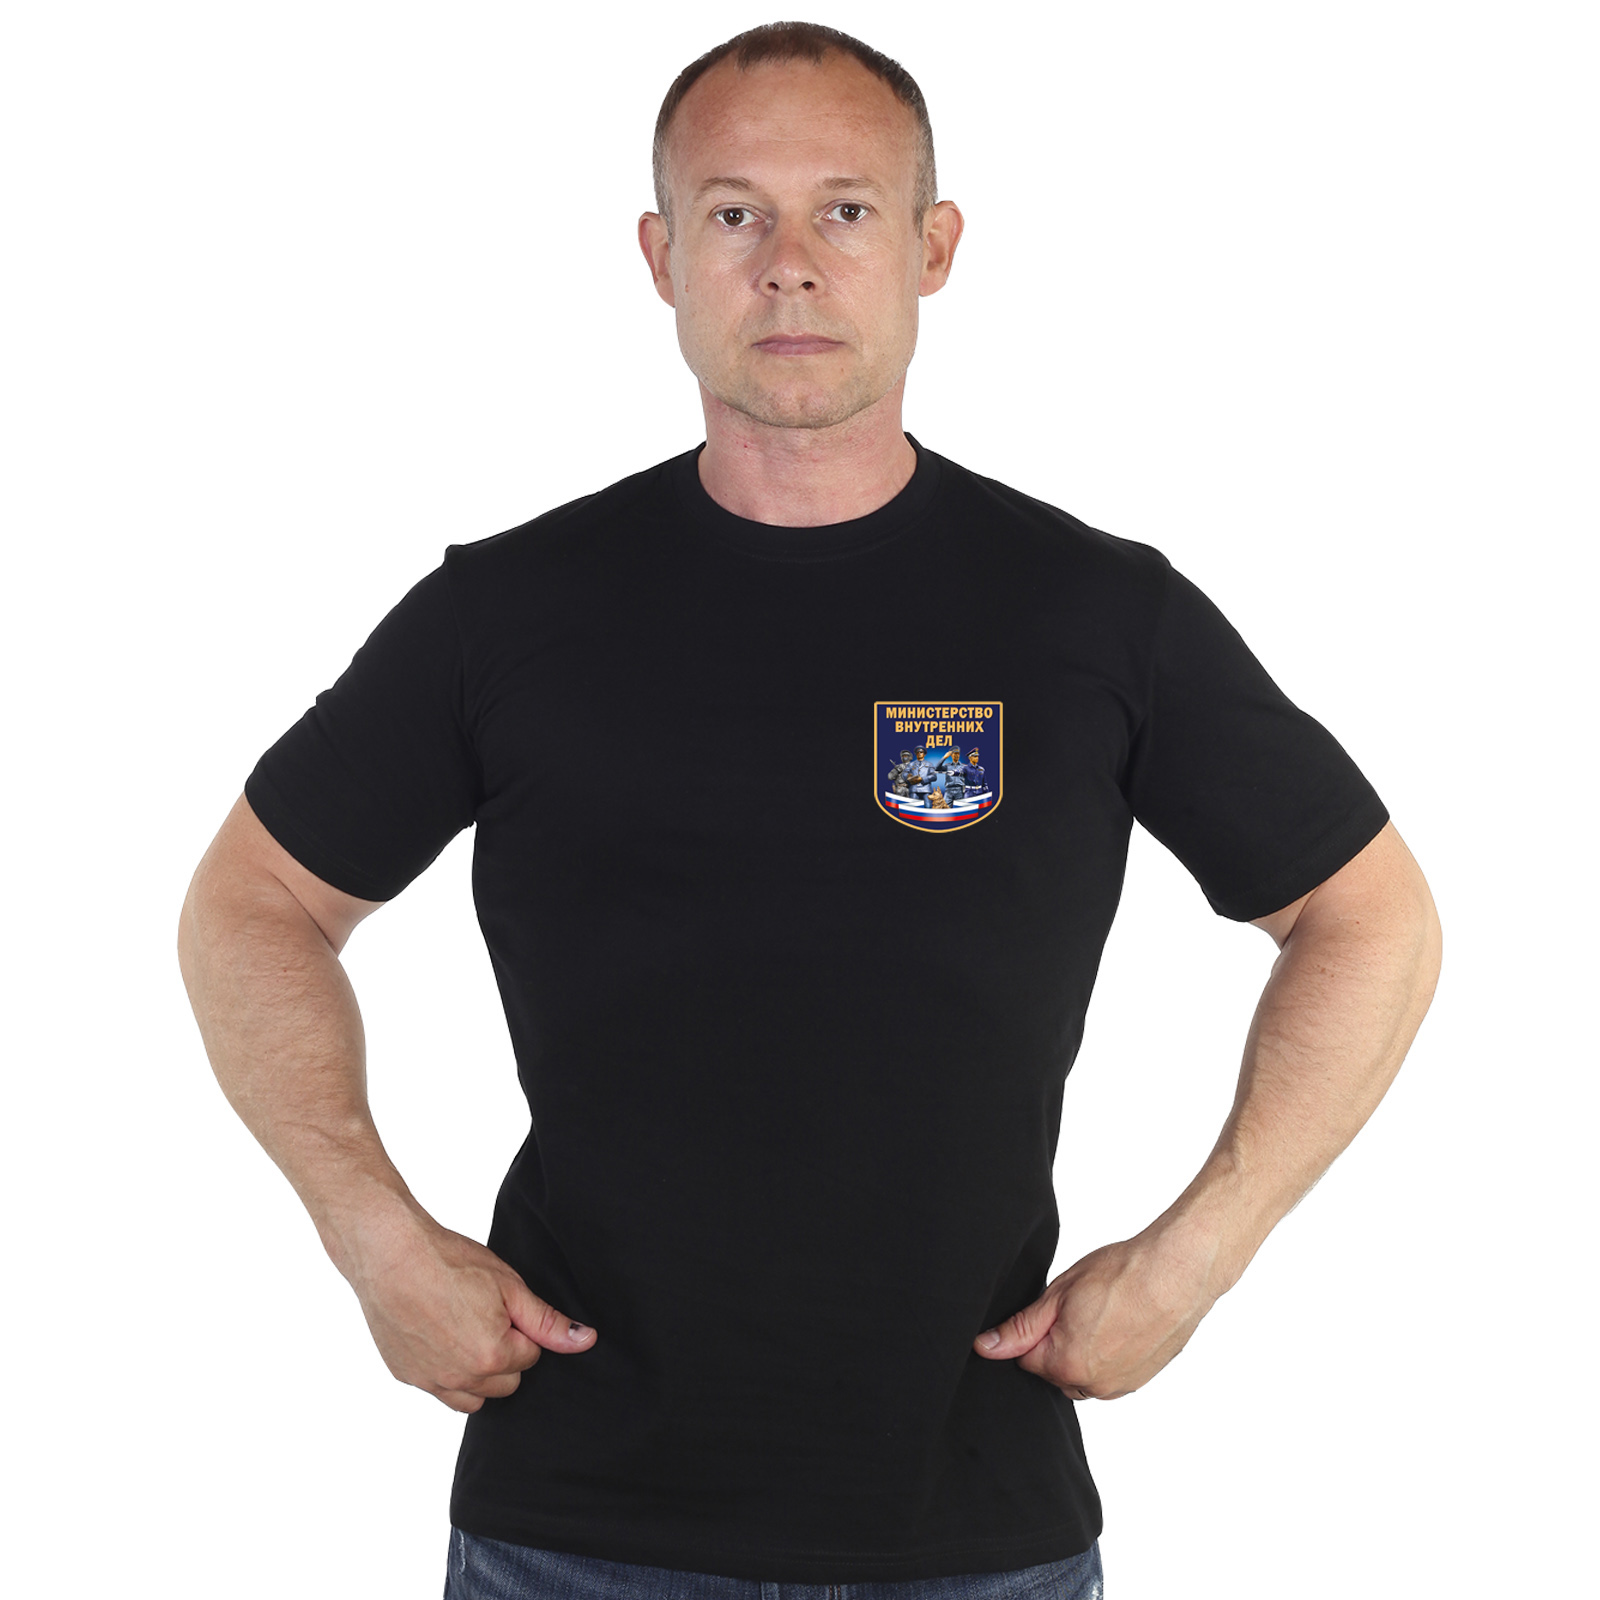 Чёрная футболка с термотрансфером "Министерство Внутренних Дел" 